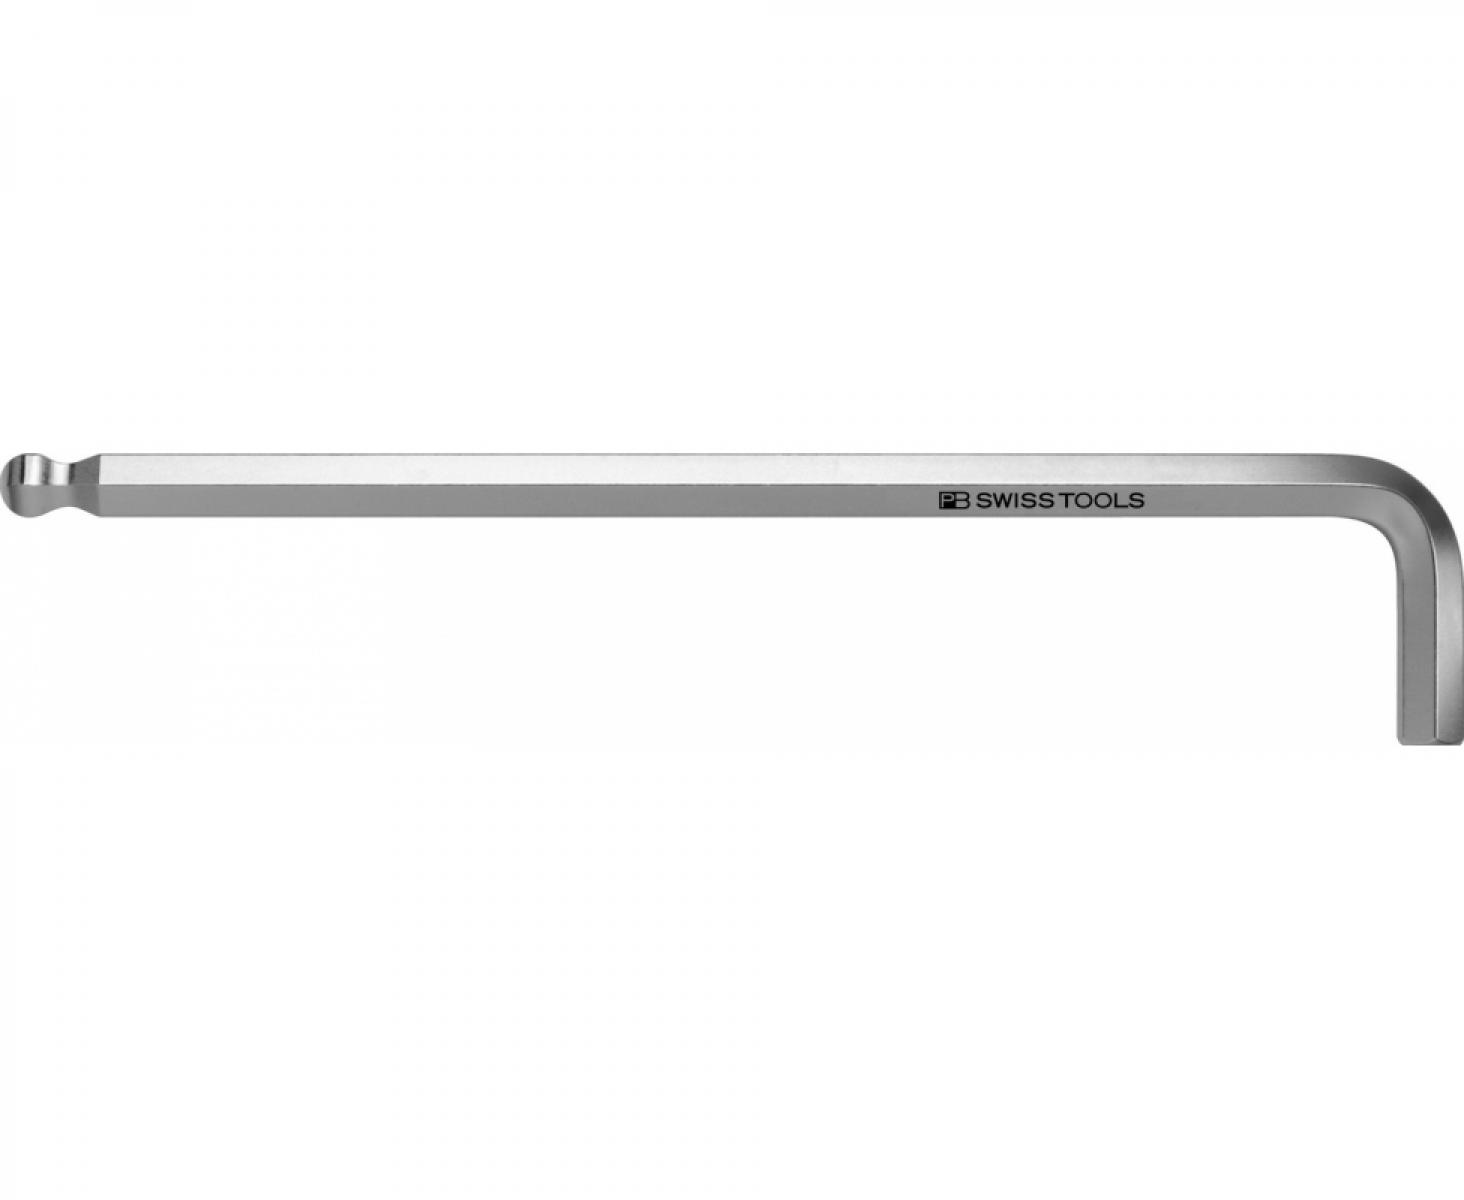 Ключ штифтовый длинный HEX PB Swiss Tools PB 212.L 1,27 со сферической головкой M1,27